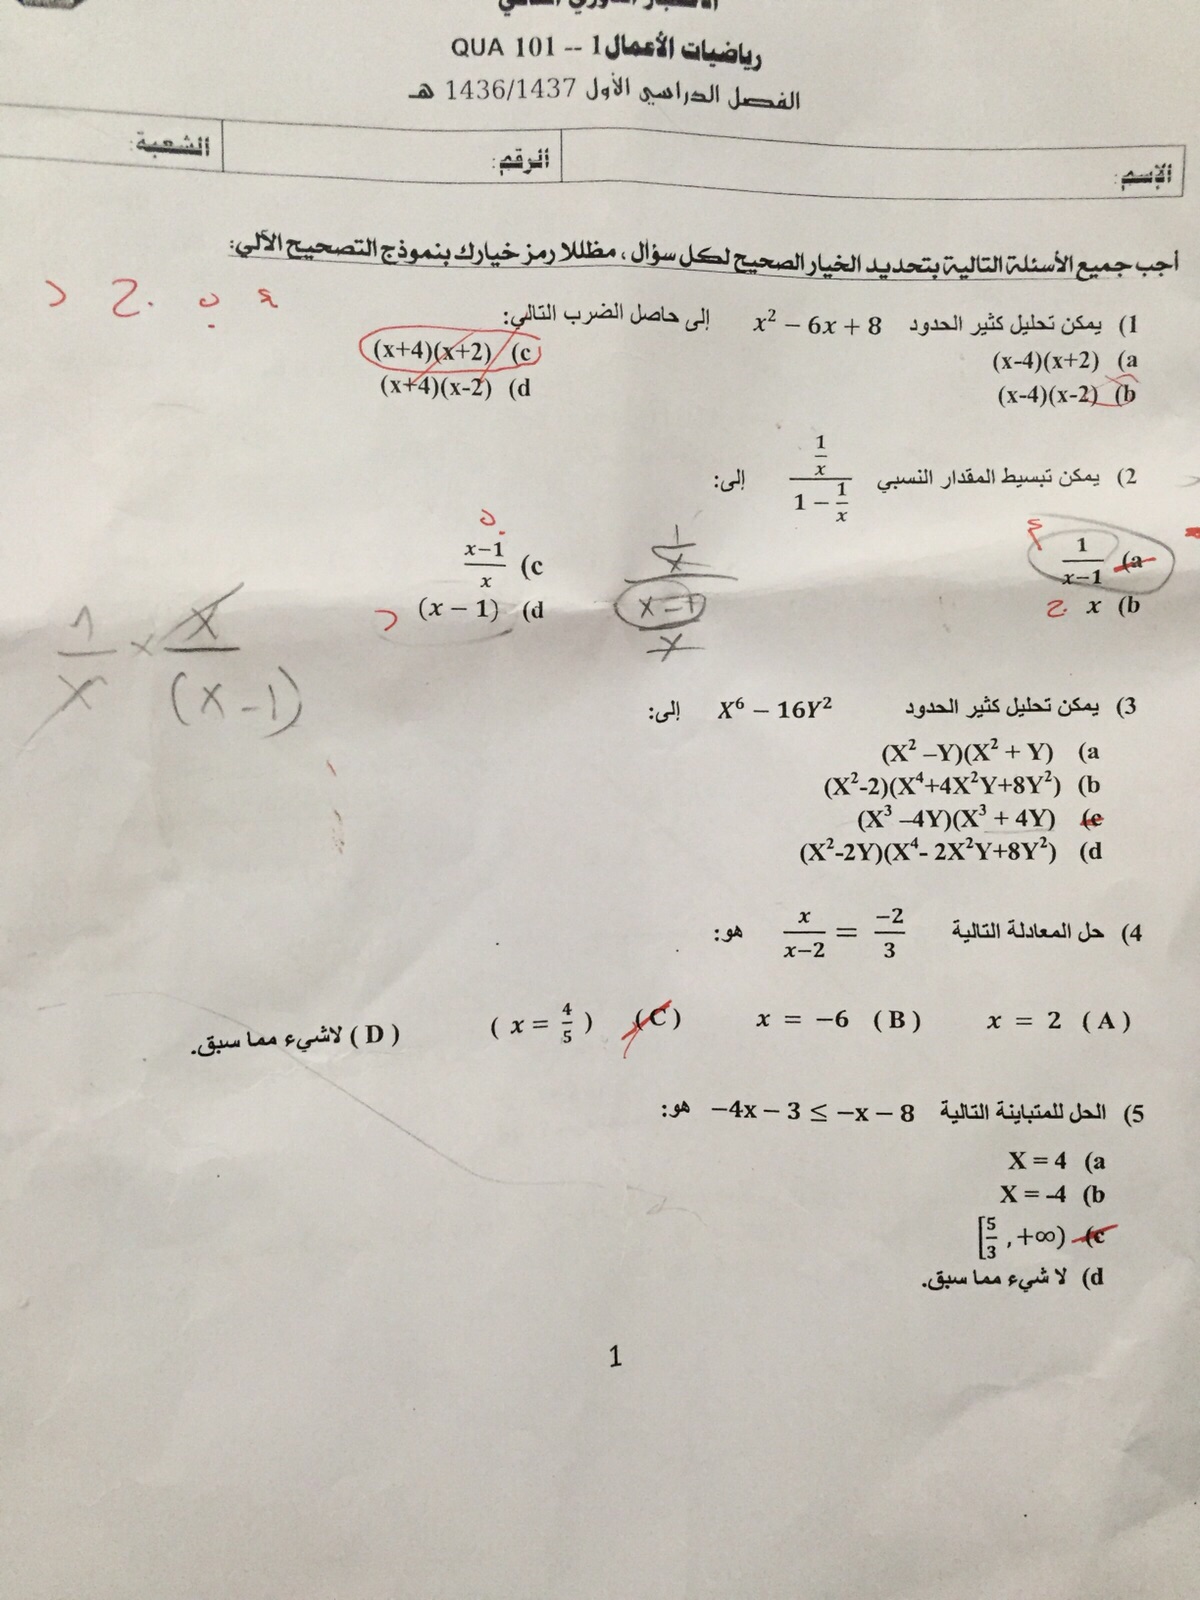 اسئلة اختبـار رياضيات الأعمال 1 الفصل الأول 1437 المستوى الأول